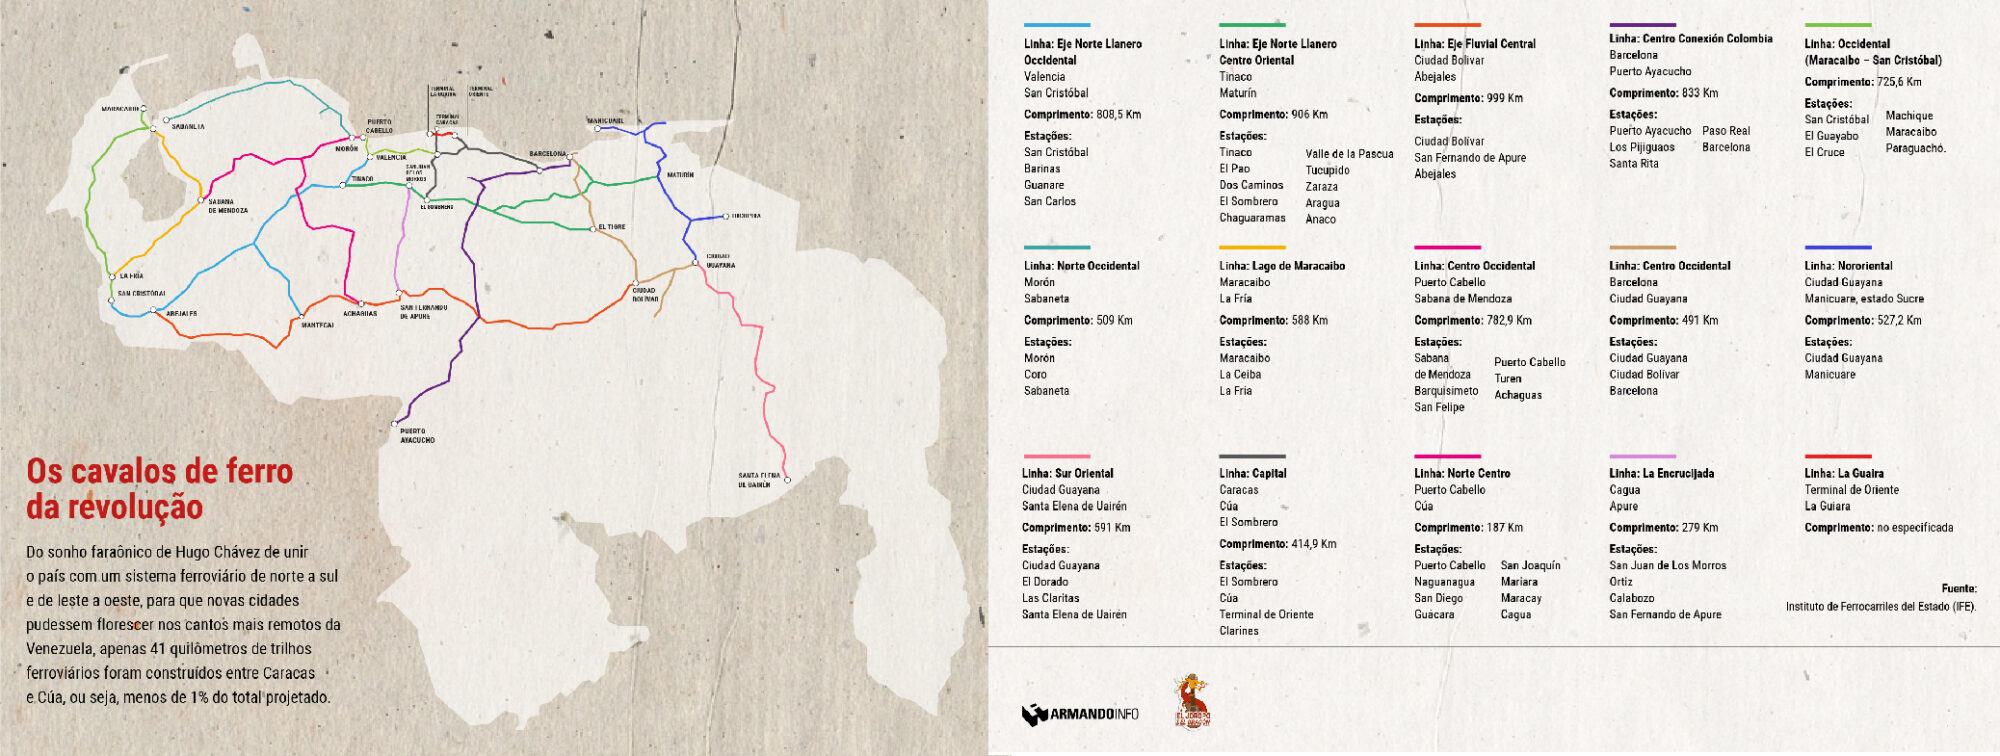 mapa mostrando o plano ferroviário da Venezuela